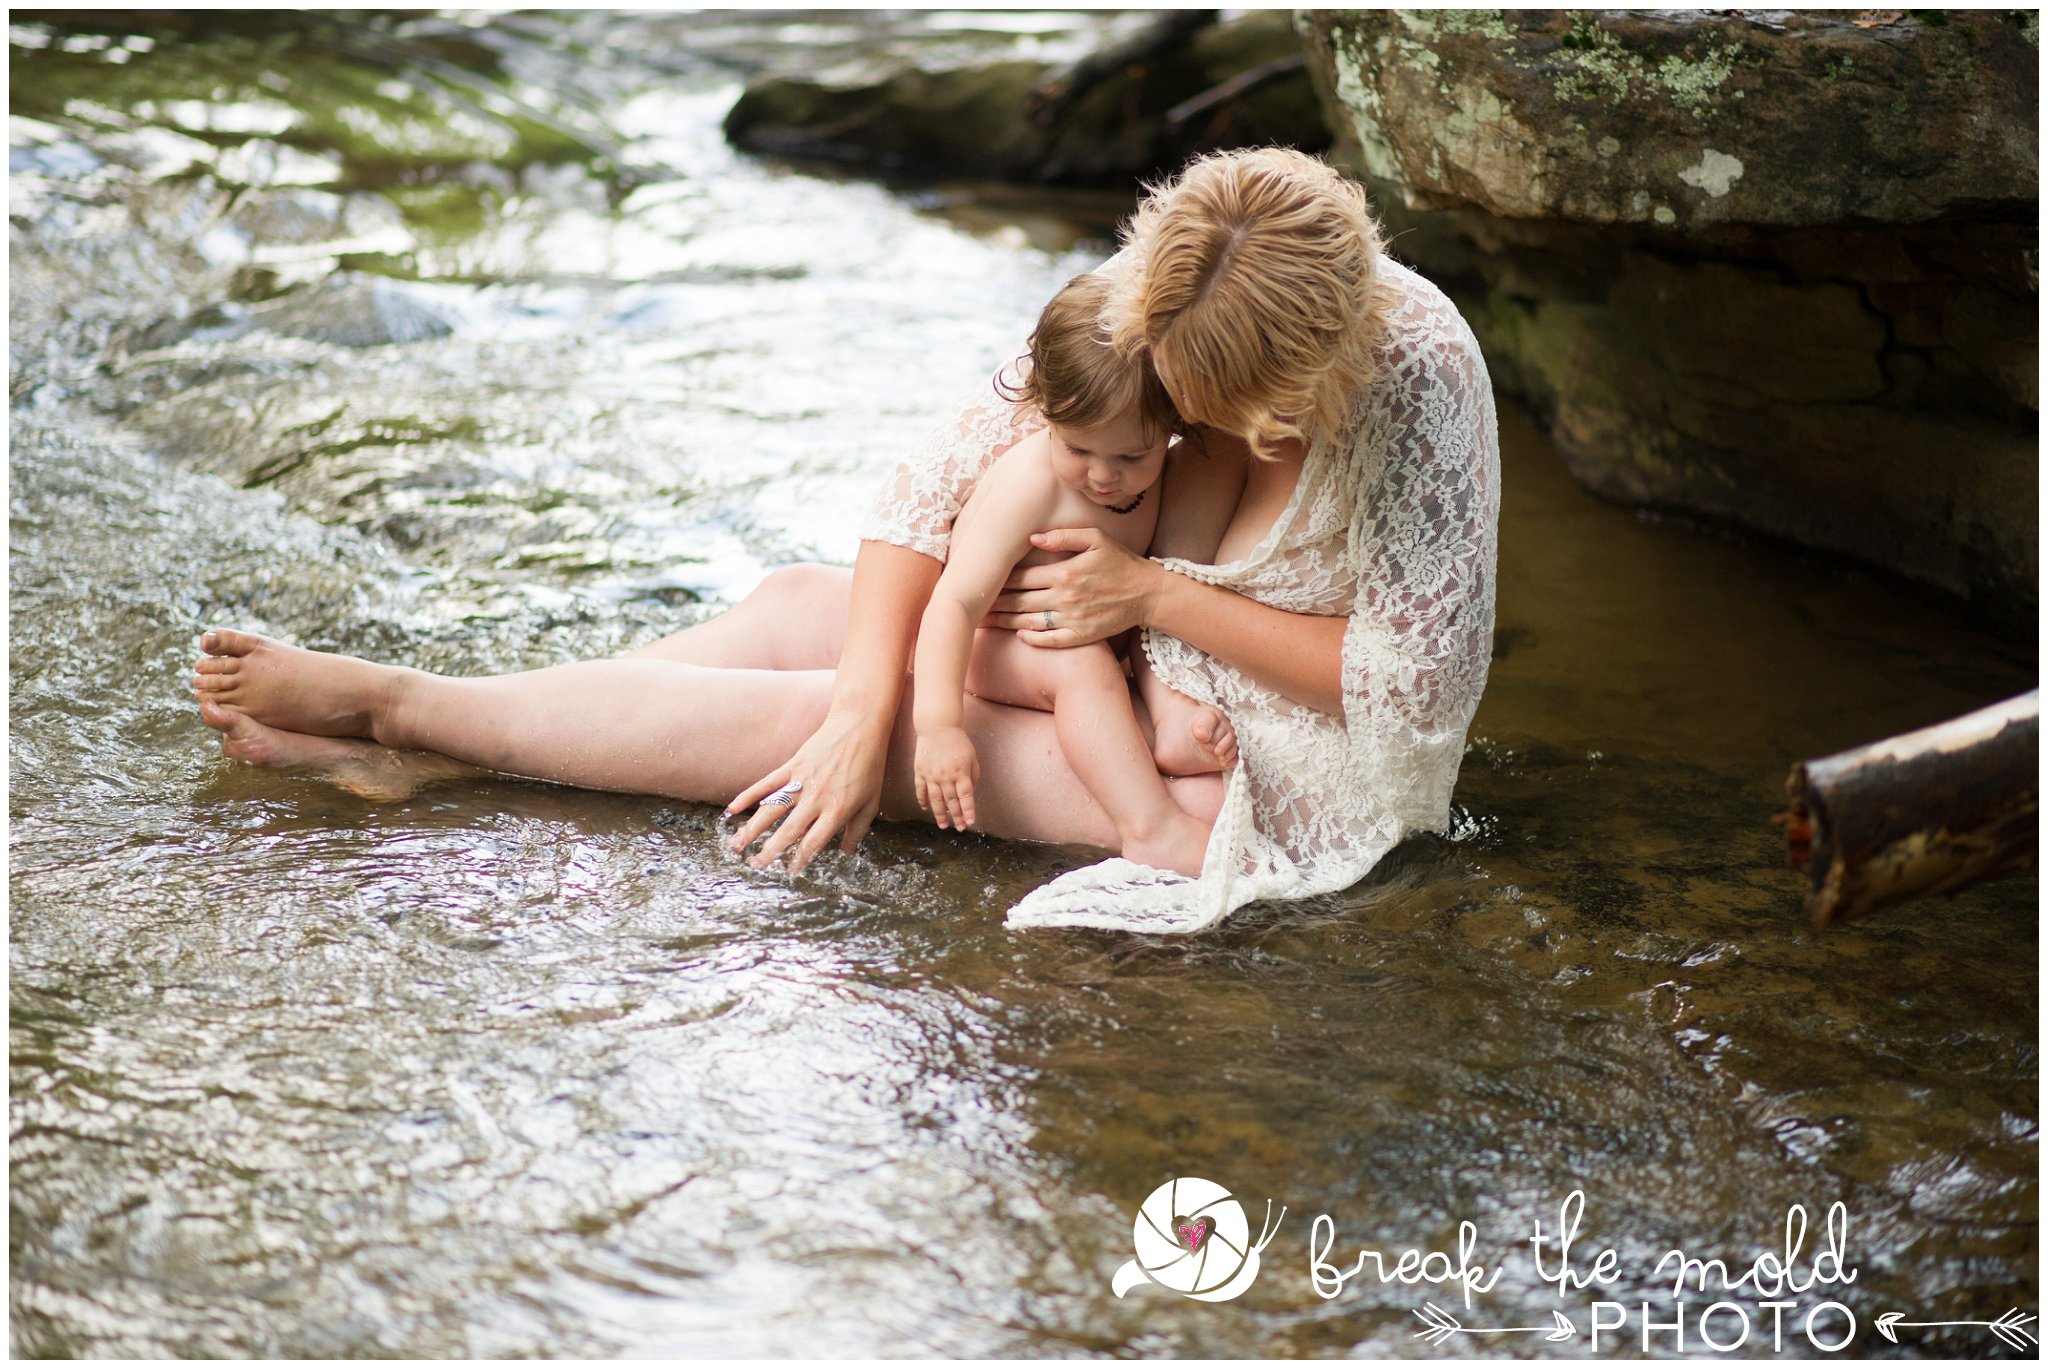 break-the-mold-photo-nursing-mothers-waterfall-women-celebrate-beauty_5447.jpg